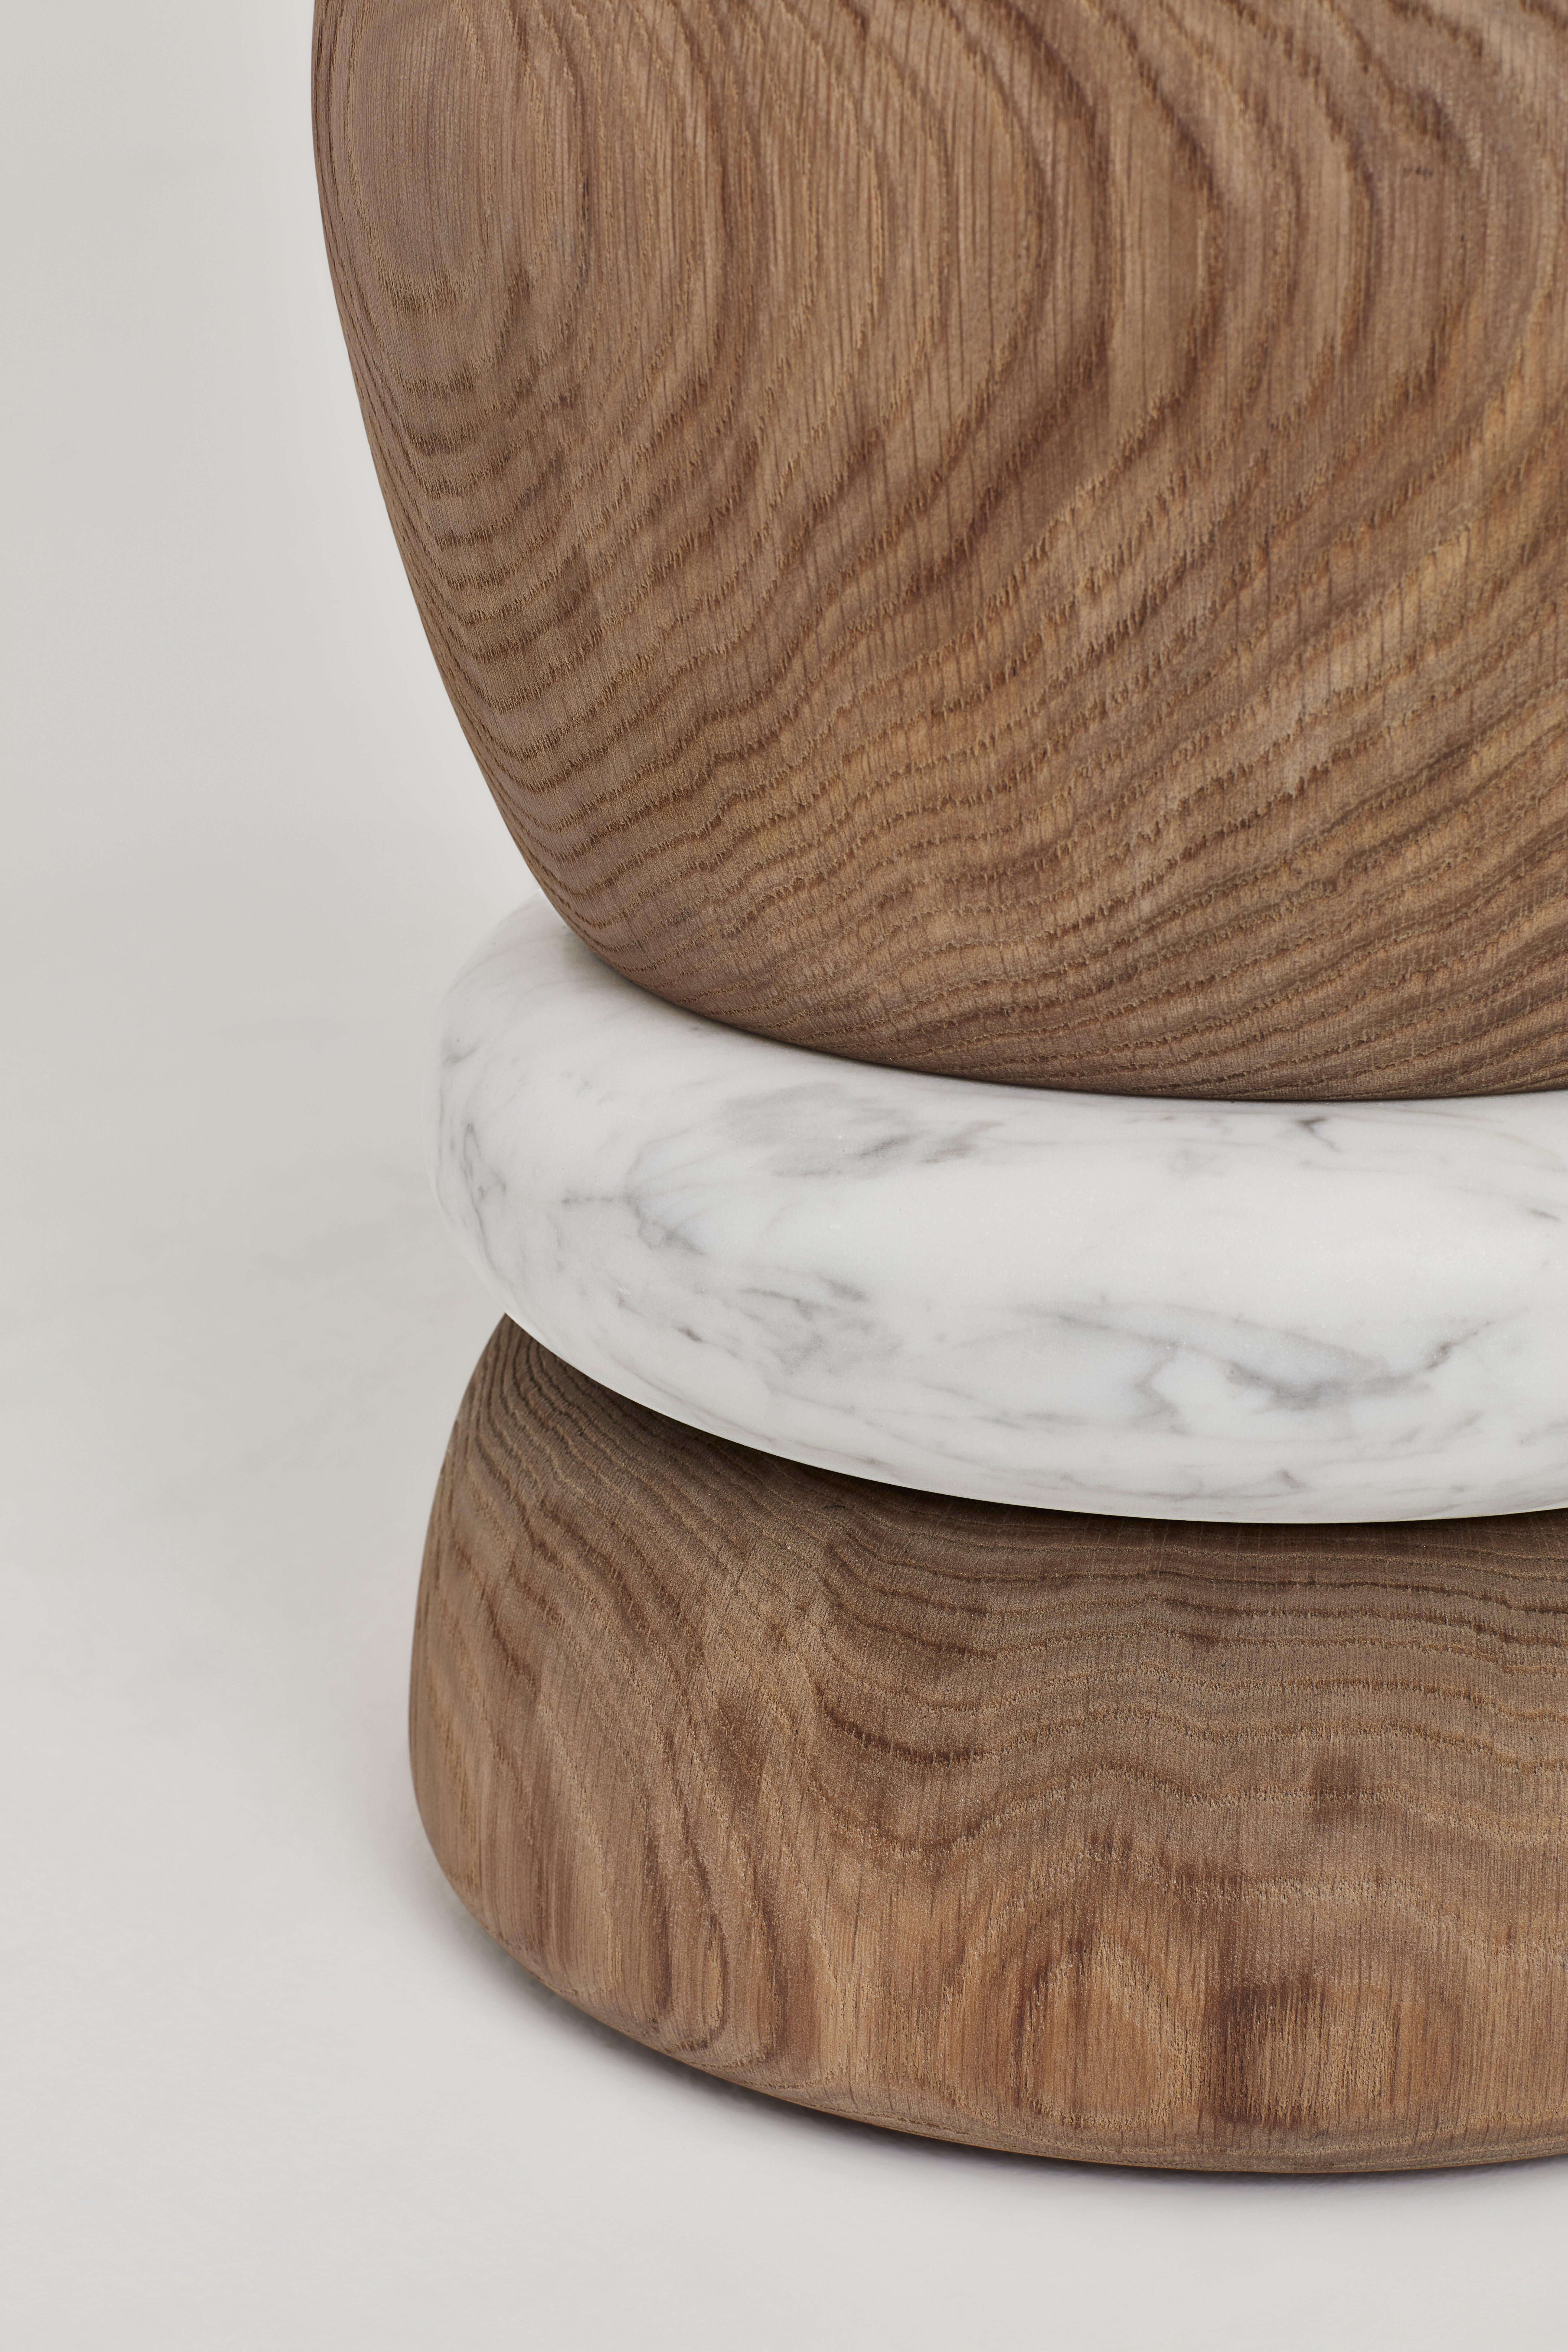 French Barri stools, White Carrara marble, oak wood For Sale